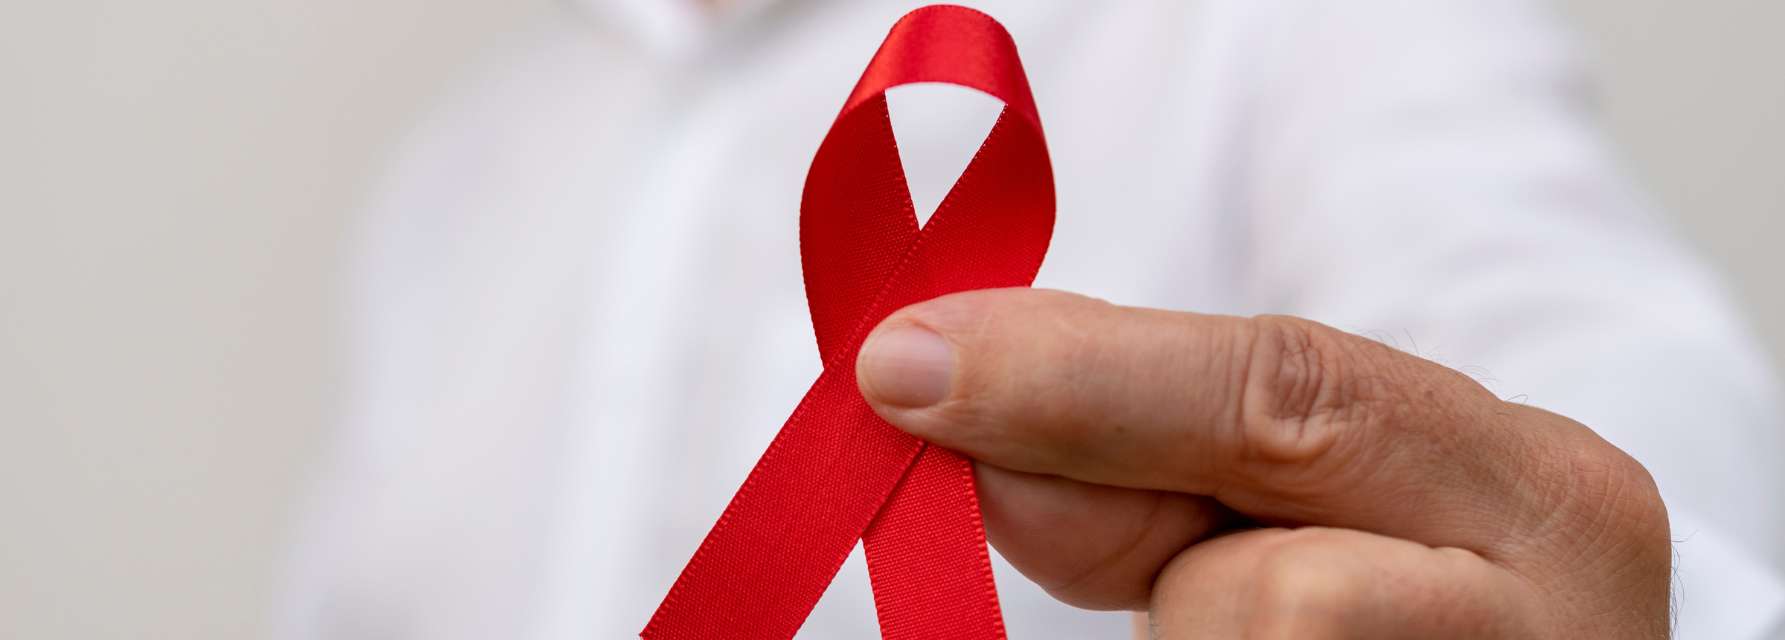 Seis mitos del VIH y el SIDA